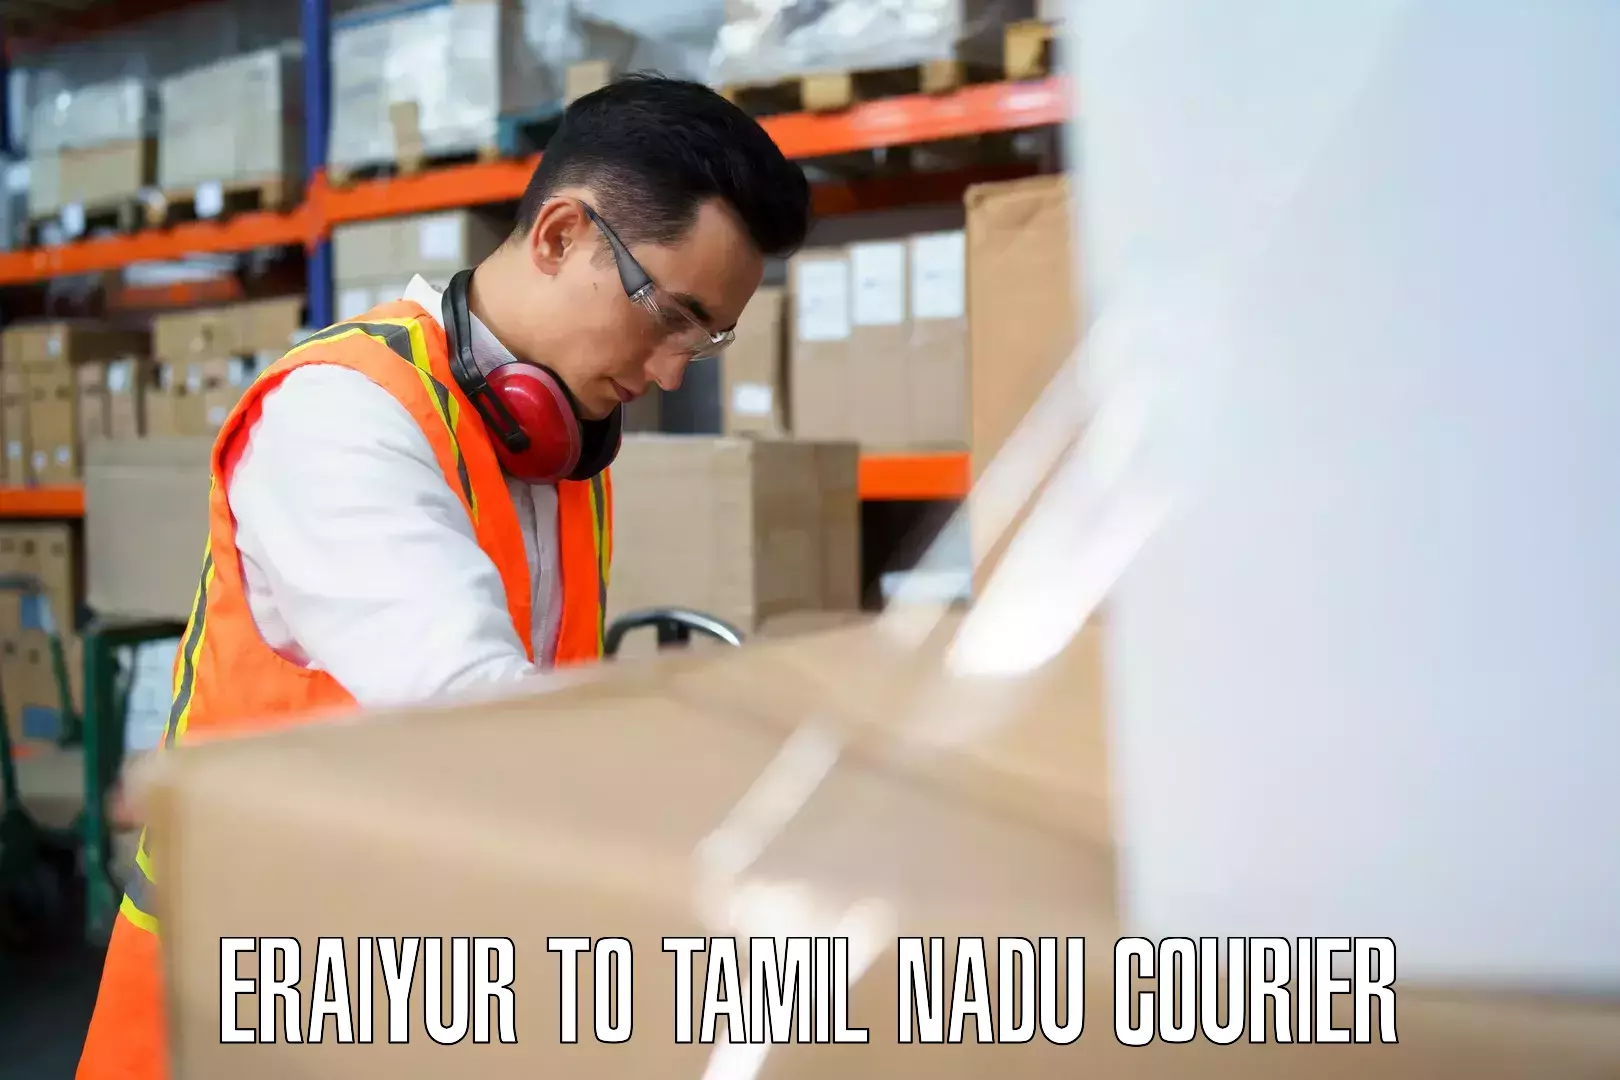 Baggage delivery technology Eraiyur to Tiruturaipundi